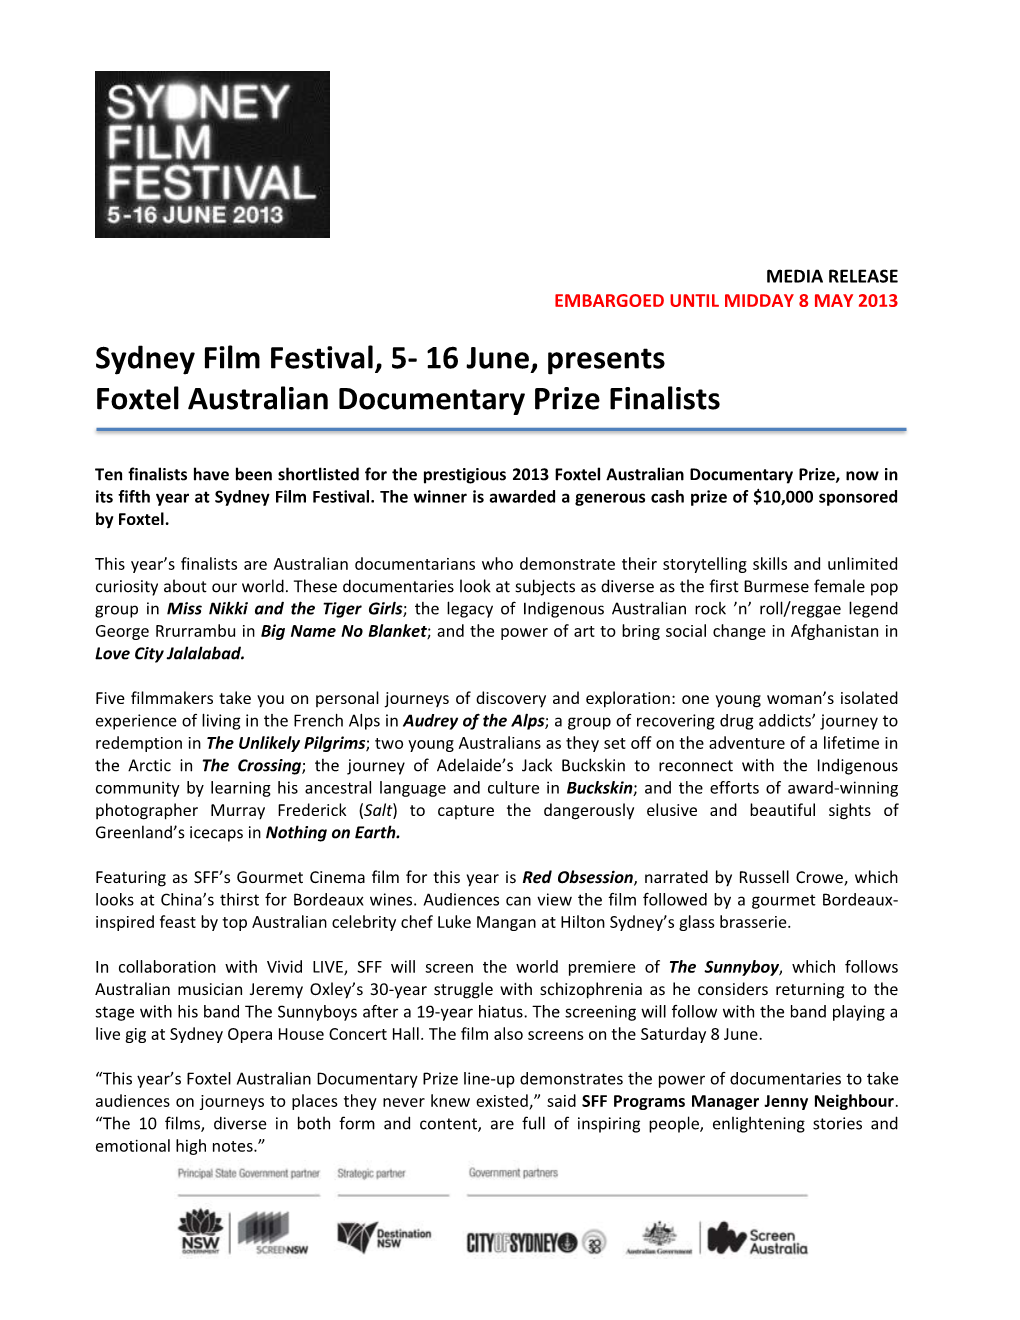 16 June, Presents Foxtel Australian Documentary Prize Finalists